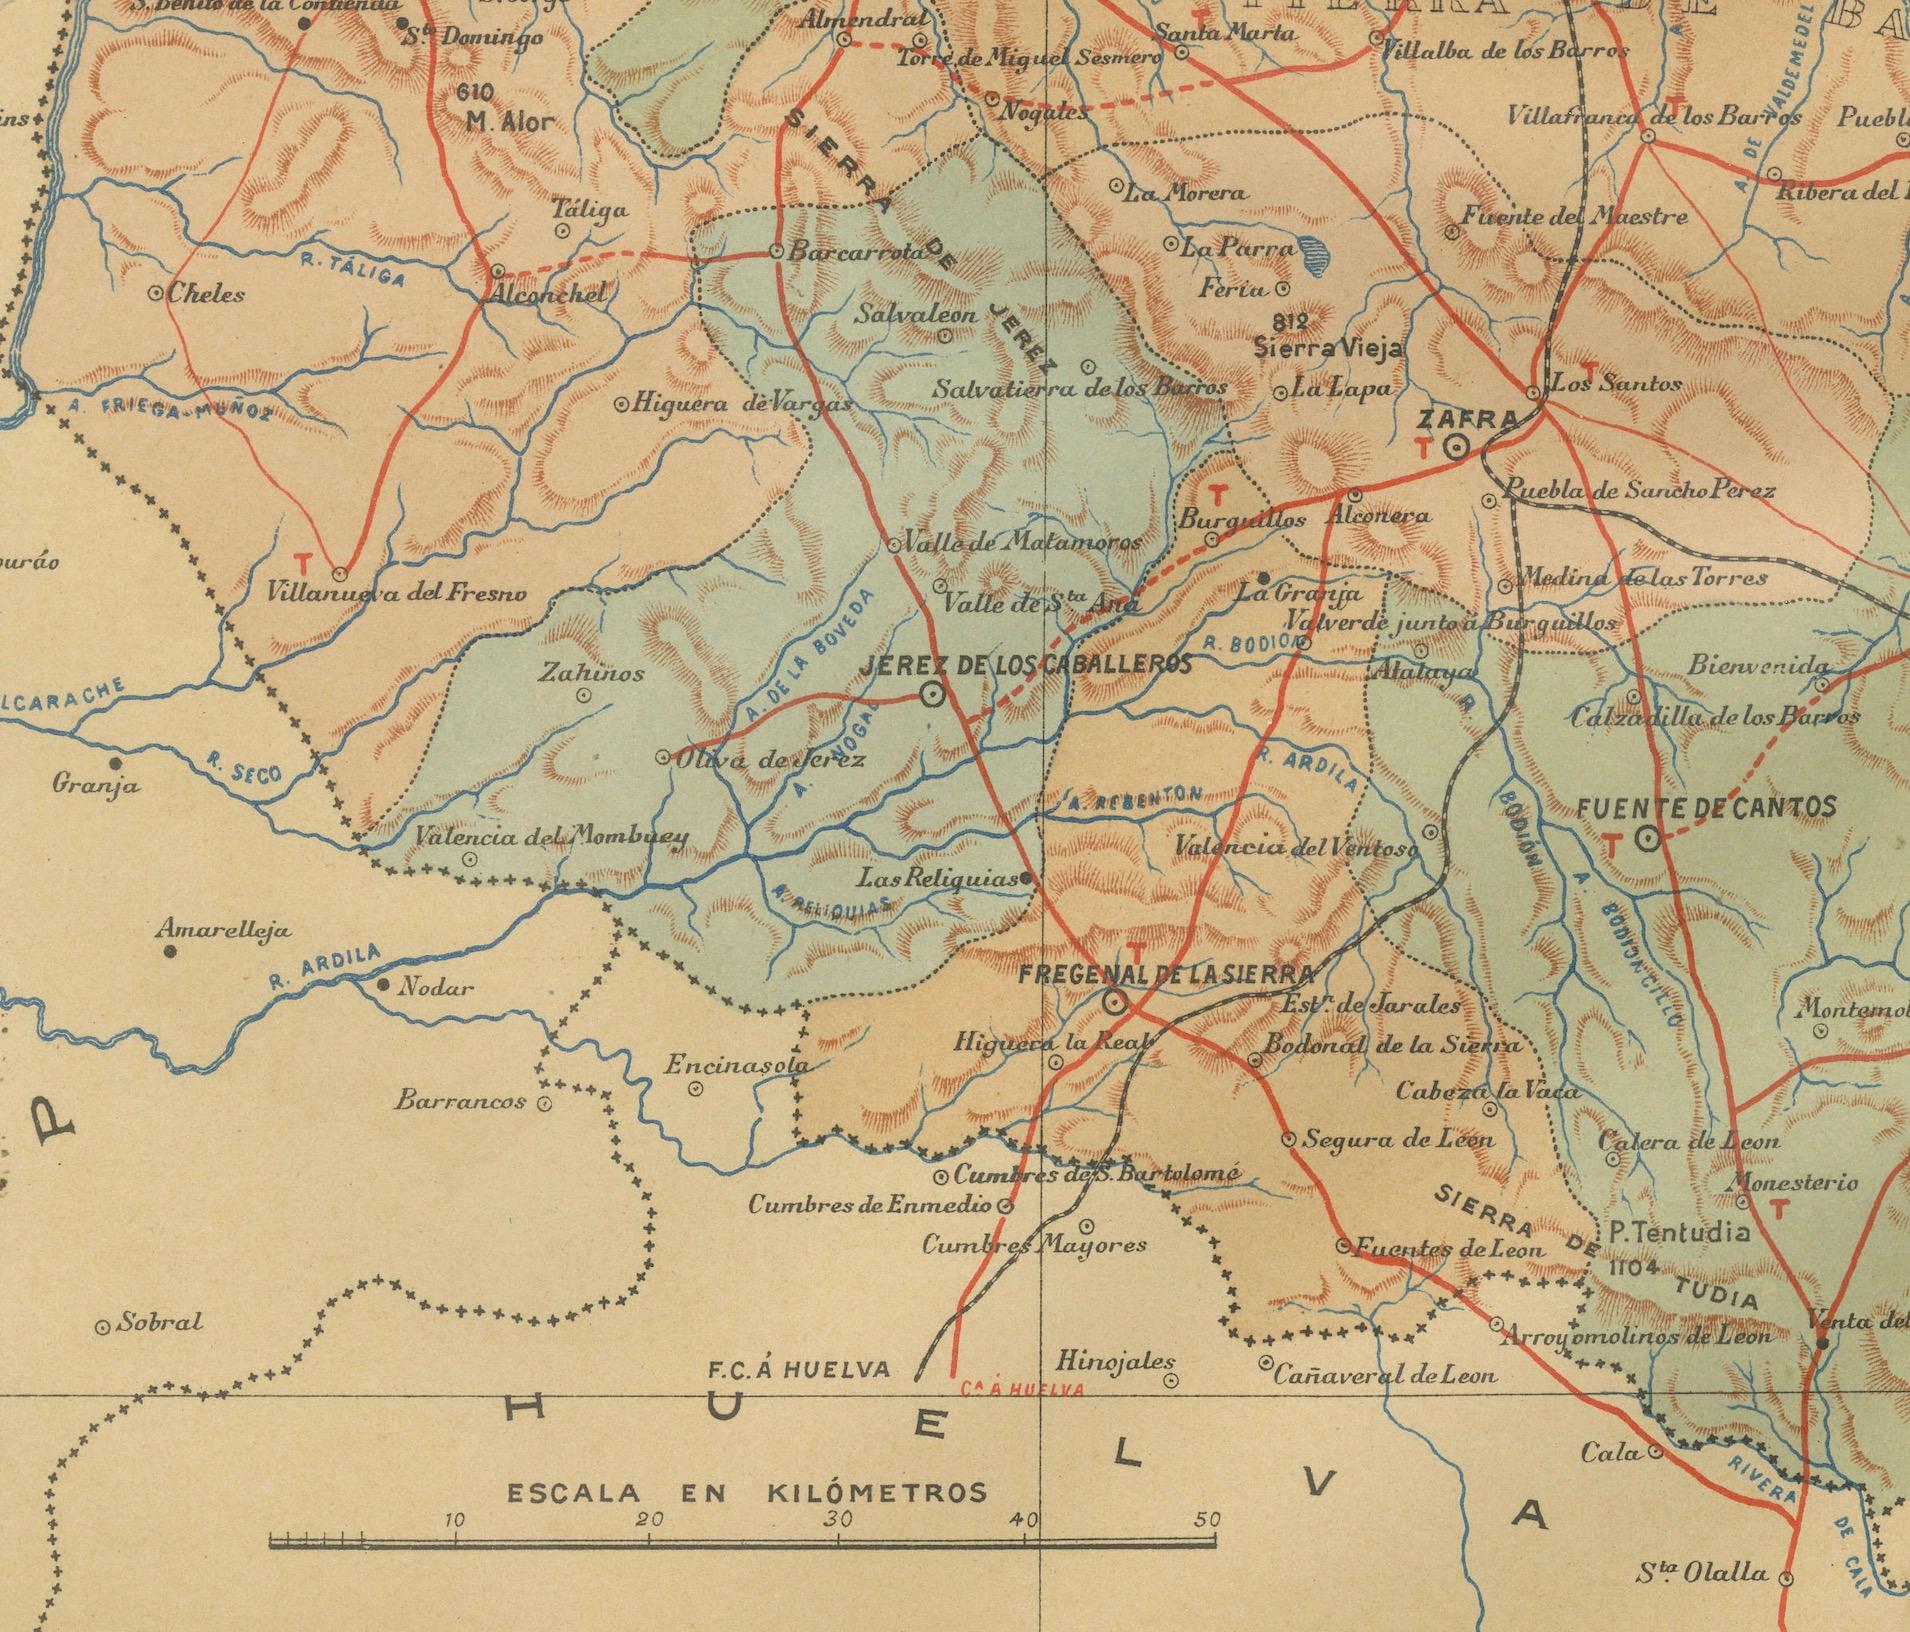 Cette carte ancienne originale à vendre est celle de la province de Badajoz, qui fait partie de la communauté autonome d'Estrémadure en Espagne, datée de 1901. Il illustre plusieurs caractéristiques importantes :

La carte montre un paysage varié,